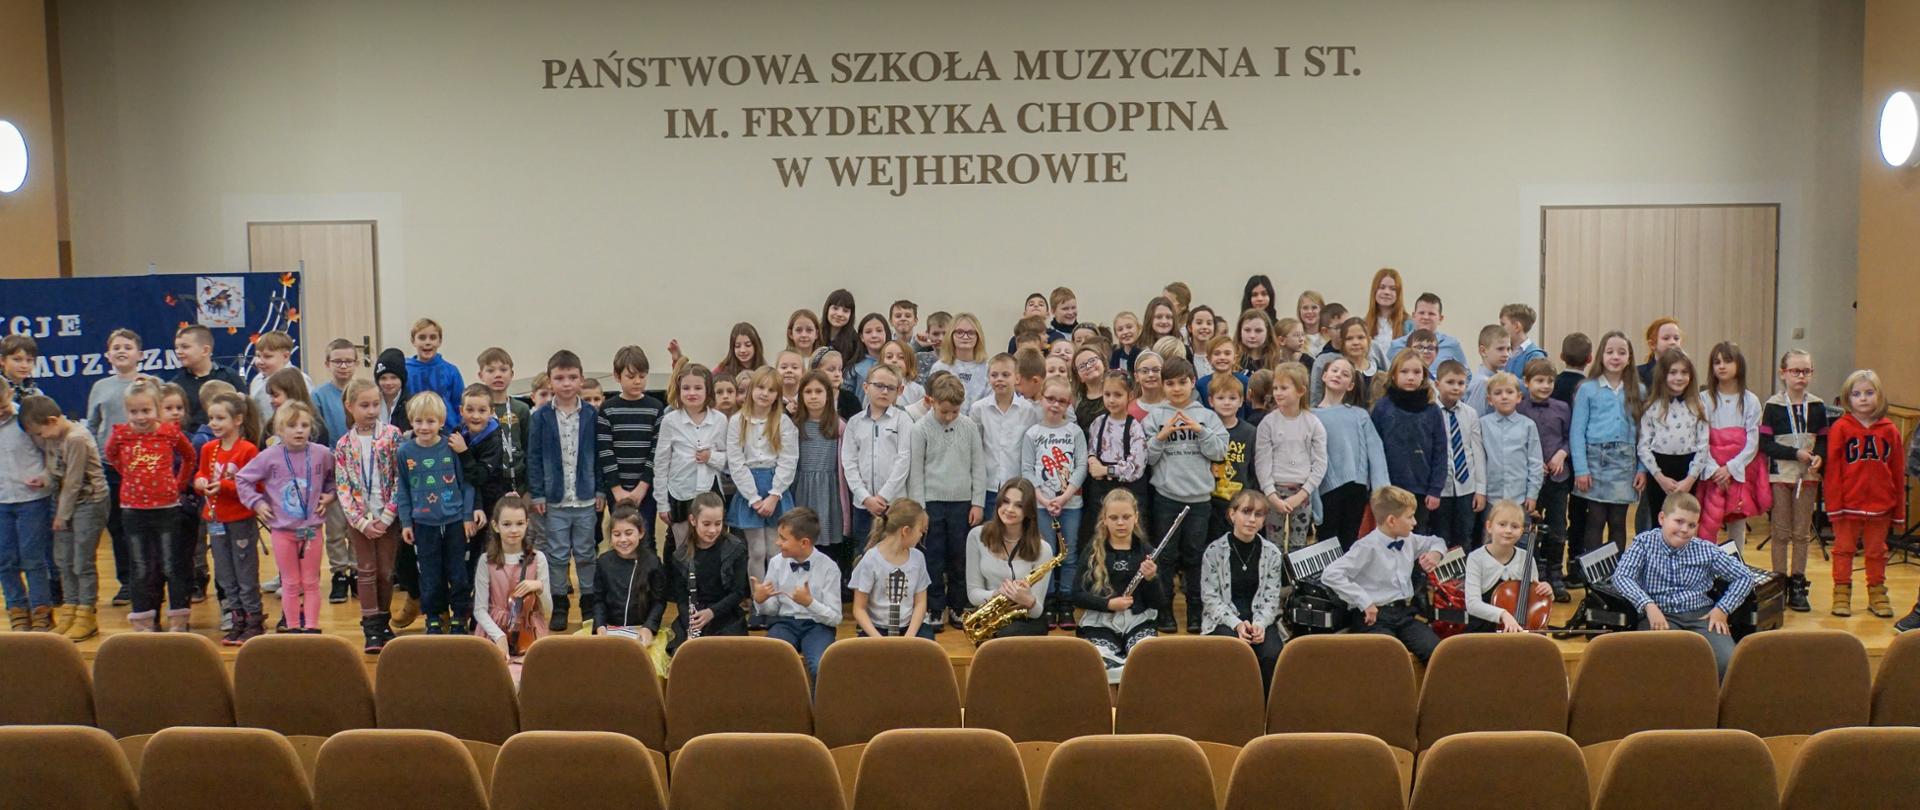 Zdjęcie grupowe na którym około setka dzieci ze szkoły podstawowej pozuje na estradzie szkolnej sali koncertowej po audycji umuzykalniającej. Na pierwszym planie siedzą wykonawcy koncertu w ilości 11 osób.